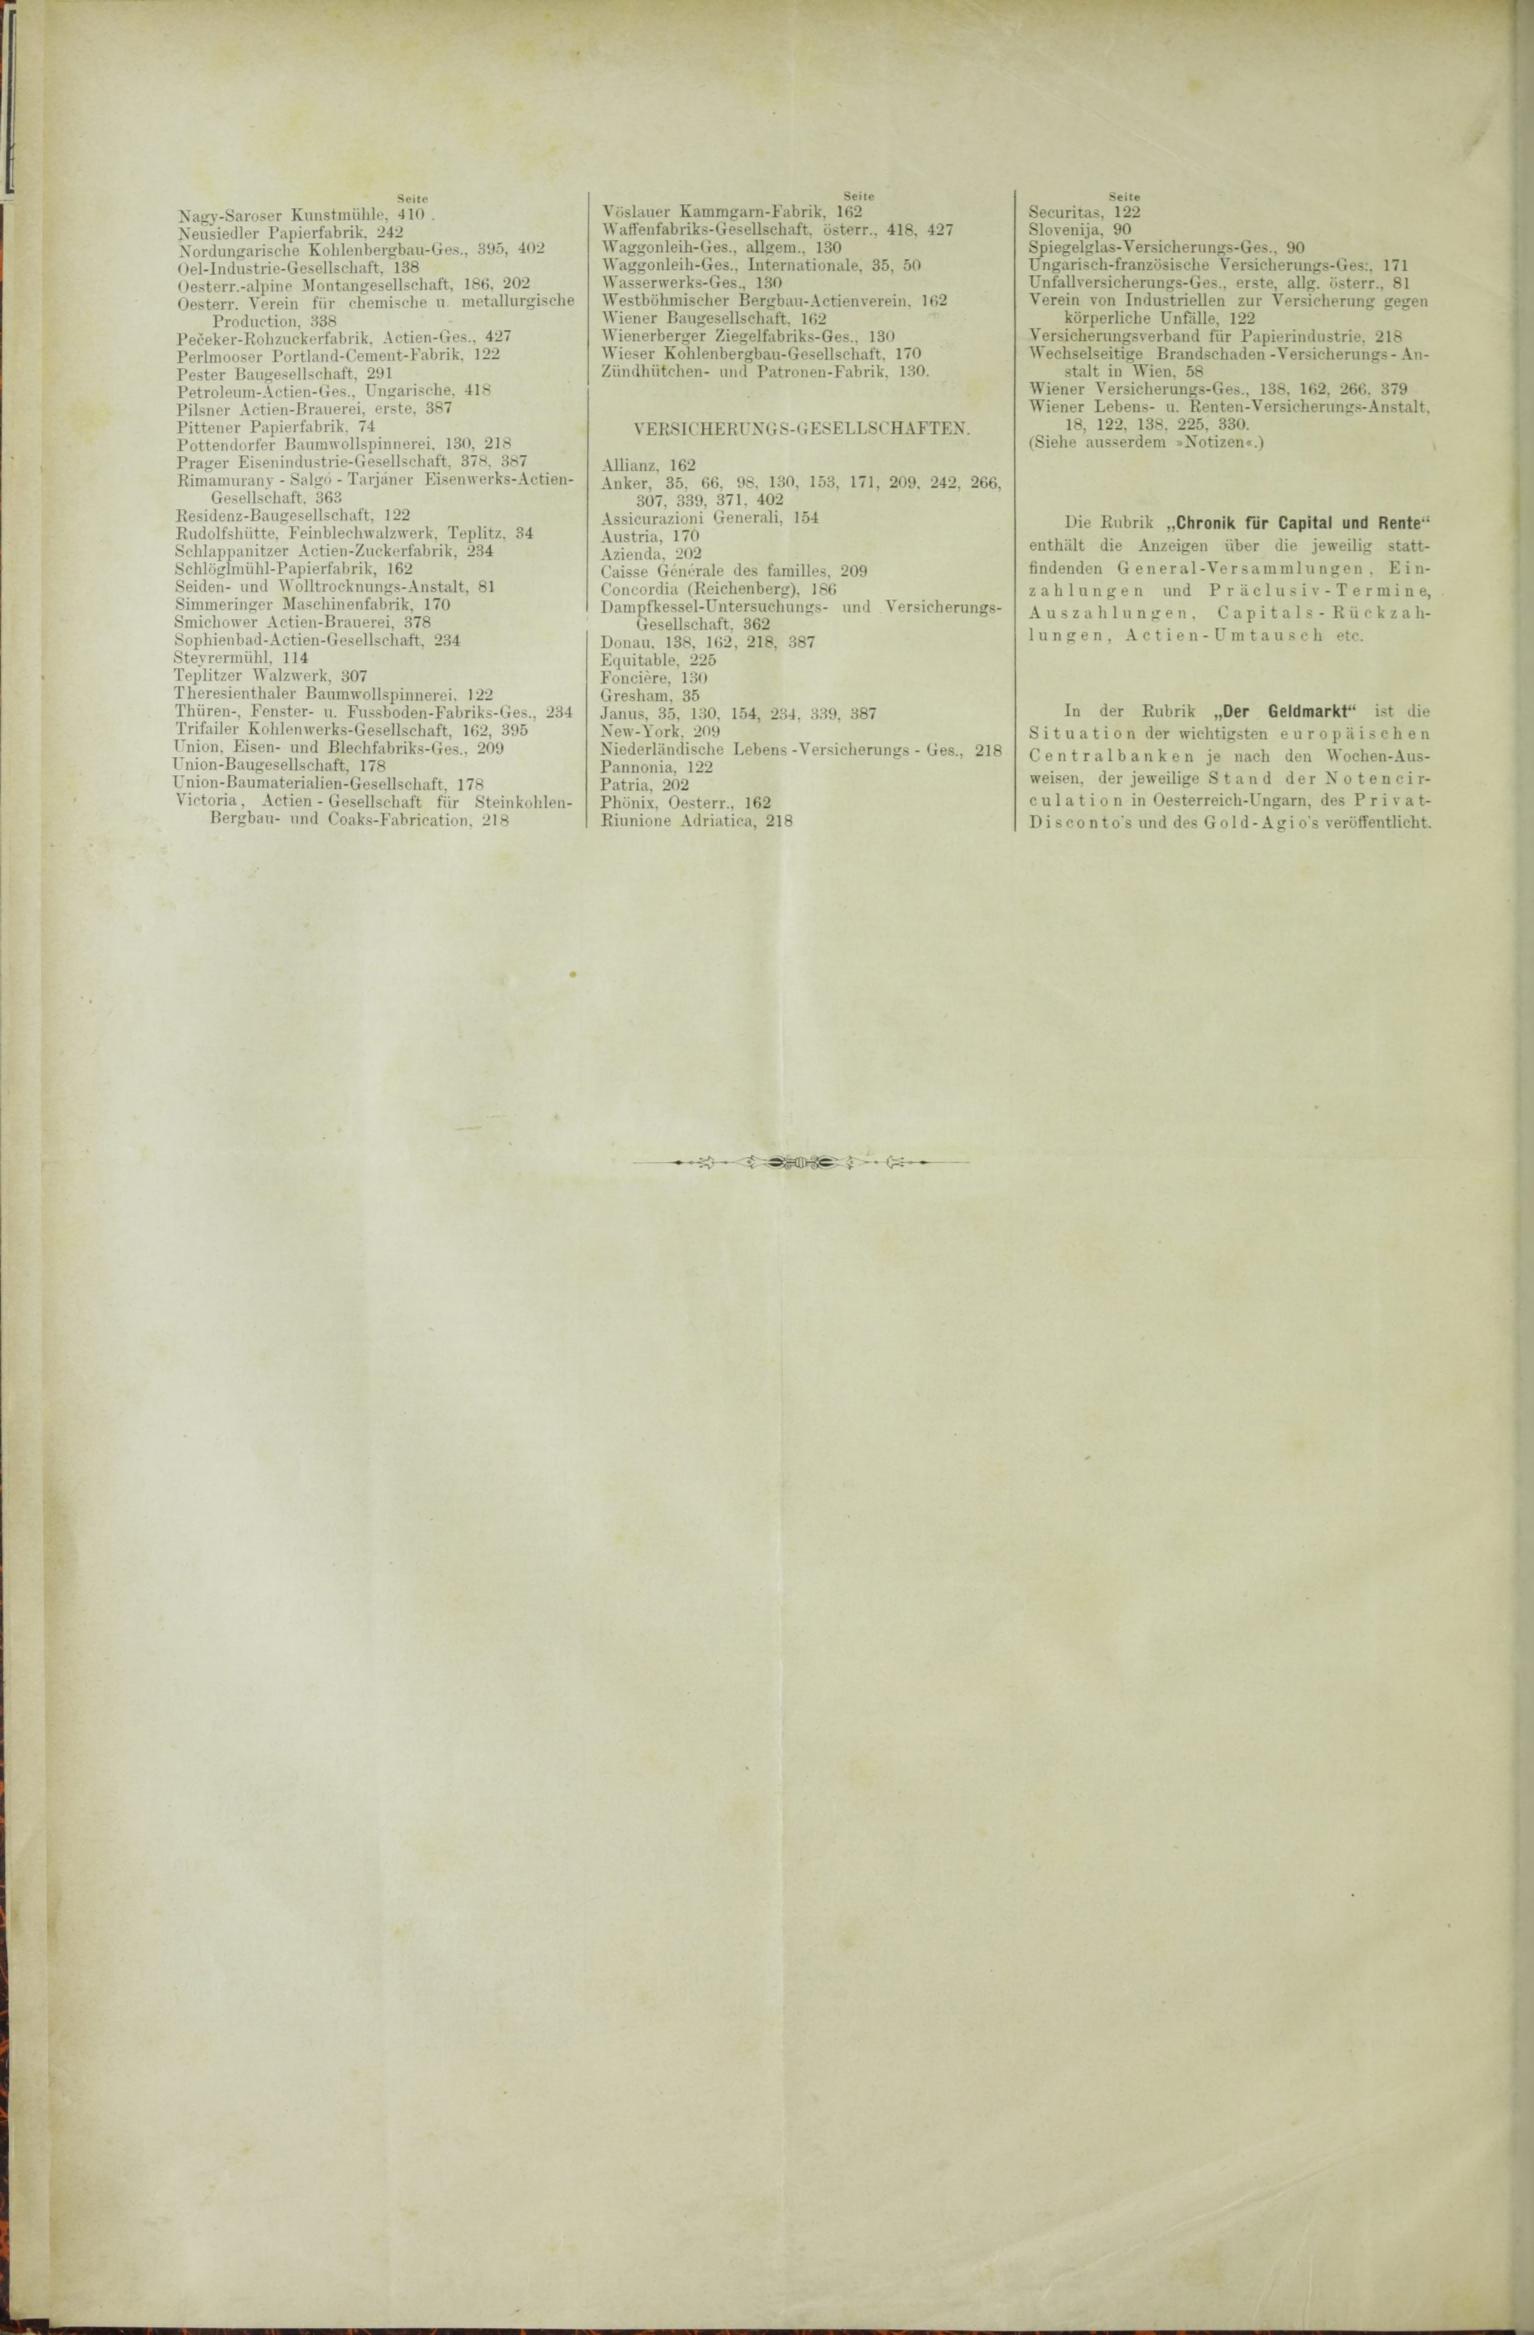 Der Tresor 12.03.1885 - Seite 12